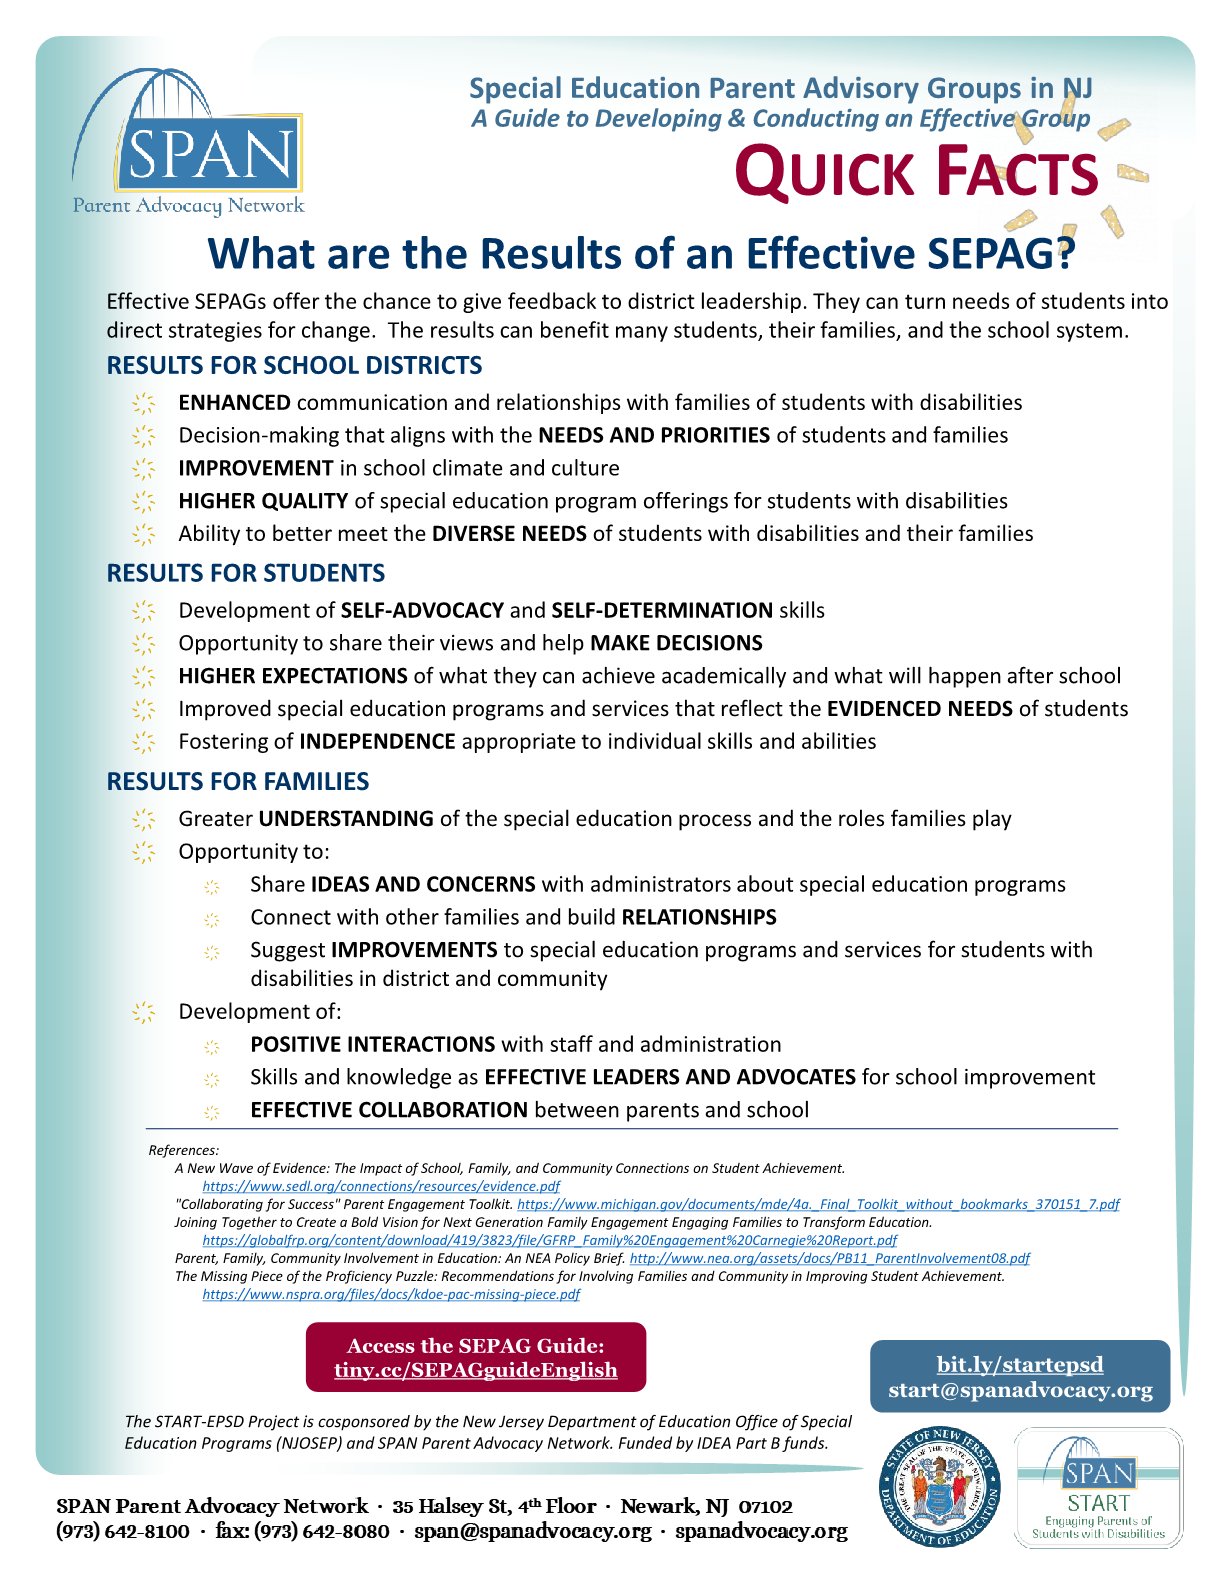 ¿Cuáles son los resultados de un SEPAG eficaz?